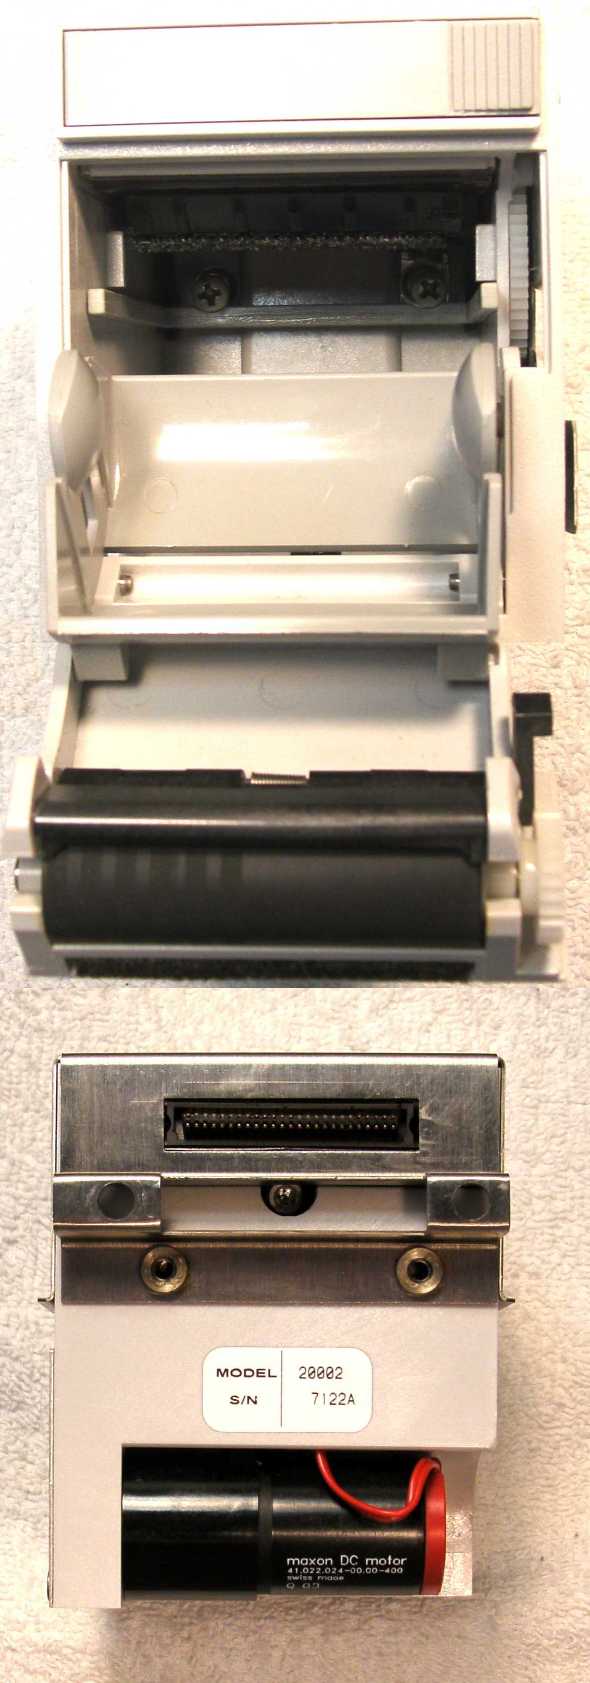 GSI Lumonics AR 42 thermal printer printers